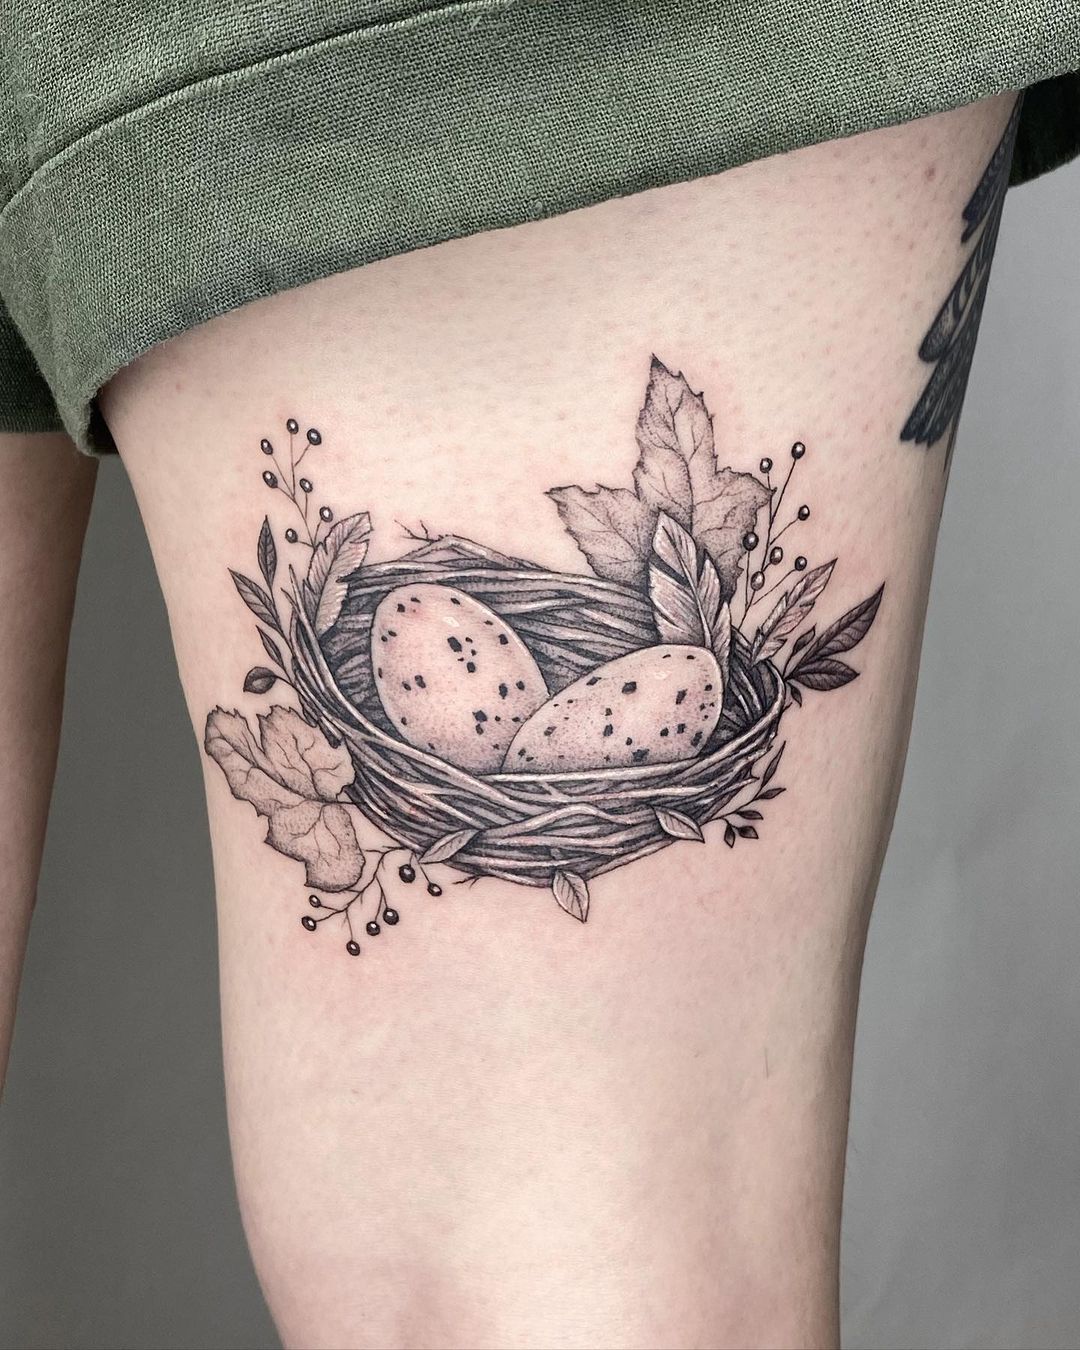 Bird nest tattoo | Bookish tattoos, Body art tattoos, Inspirational tattoos